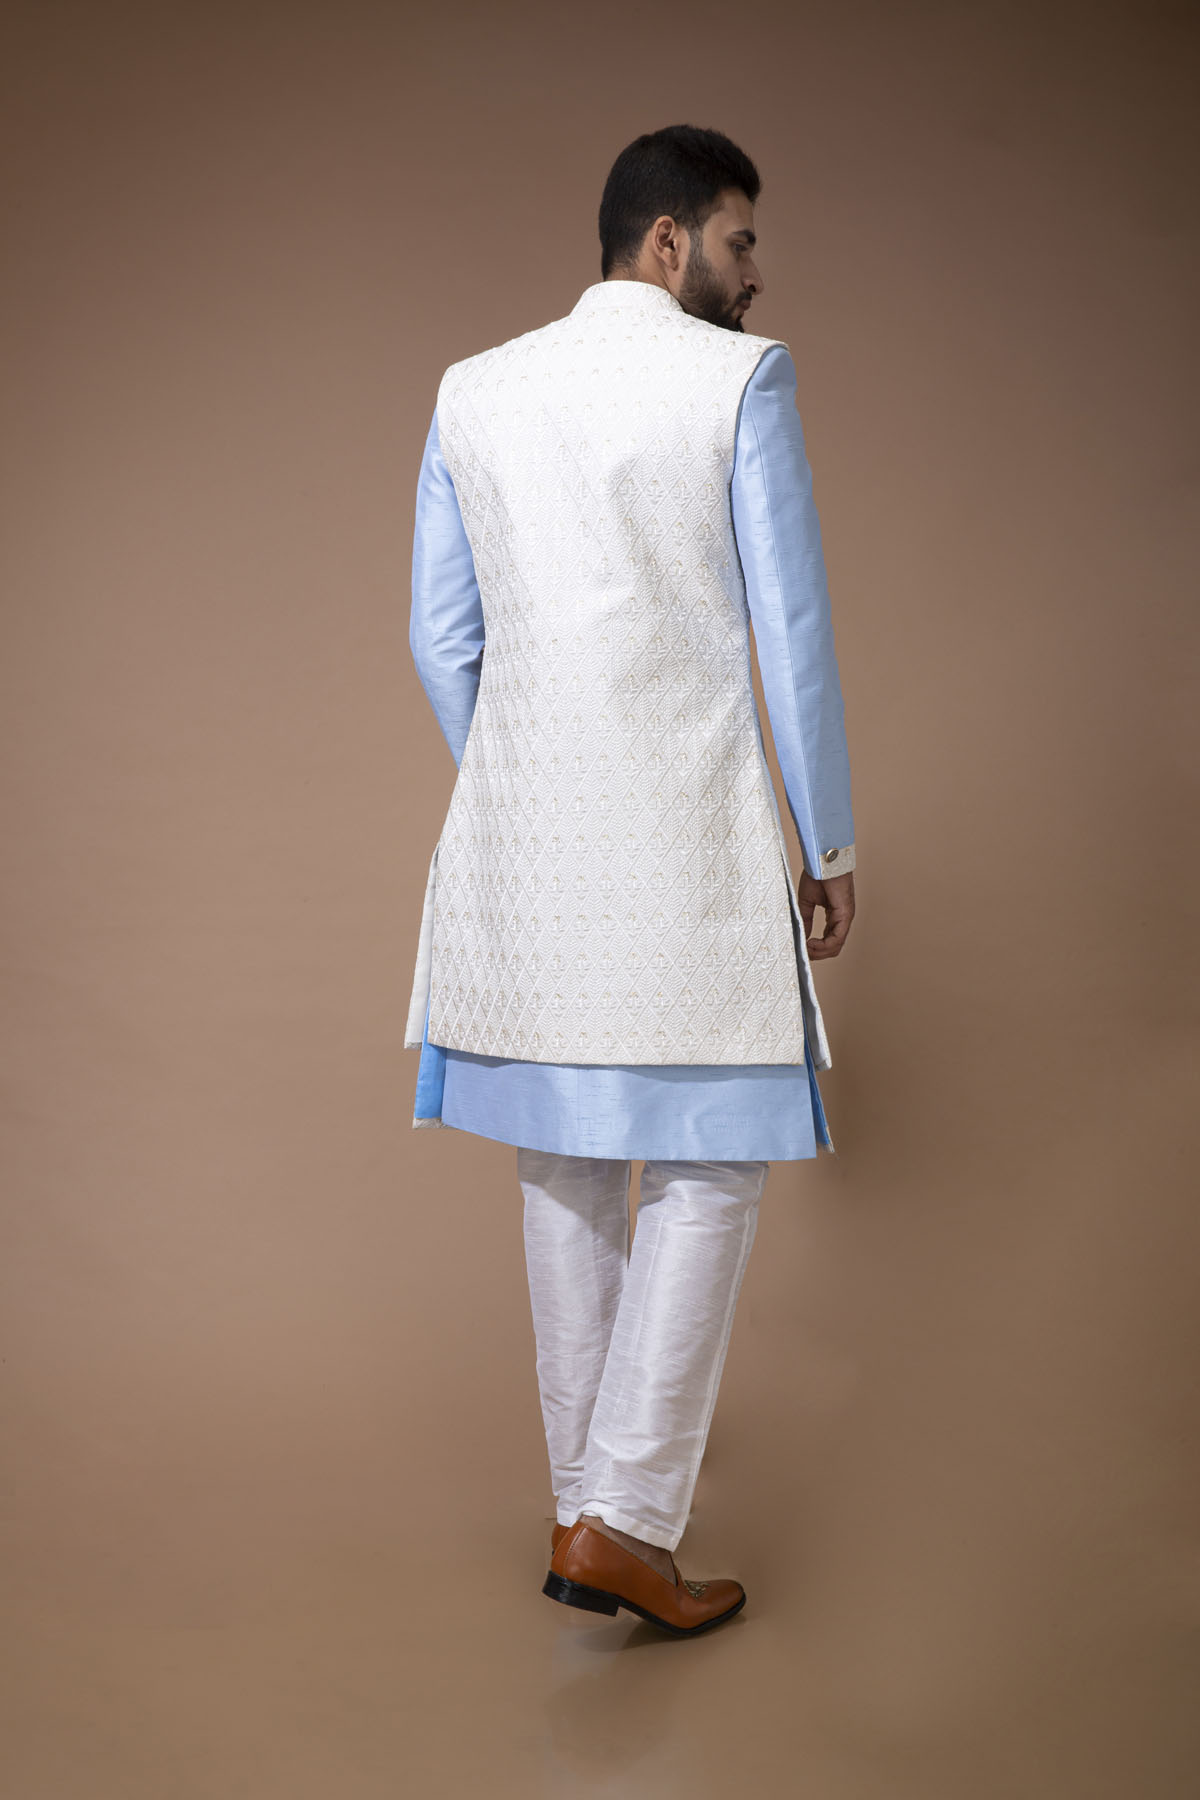 Powder blue Nawabi with white Long jacket